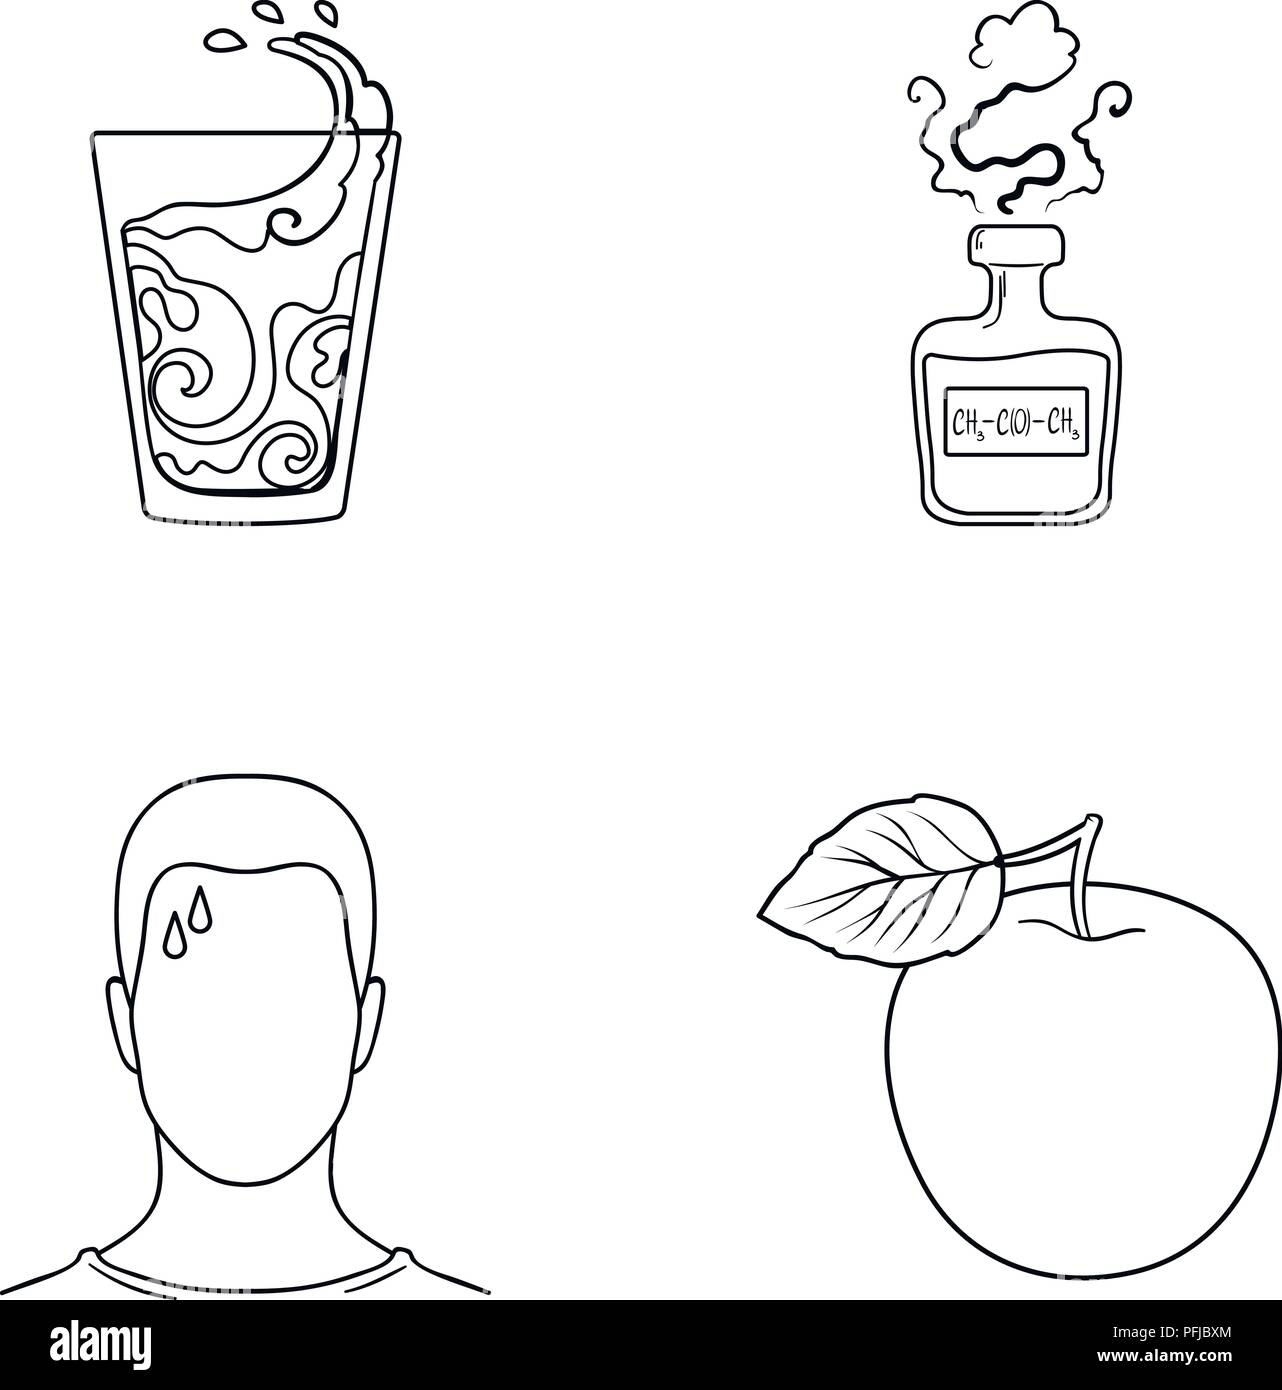 Ein Glas Wasser, eine Flasche Alkohol, ein Schwitzen Mann, ein Apple. Diabeth set Sammlung Symbole in der gliederungsansicht Stil vektor Symbol lieferbar Abbildung. Stock Vektor